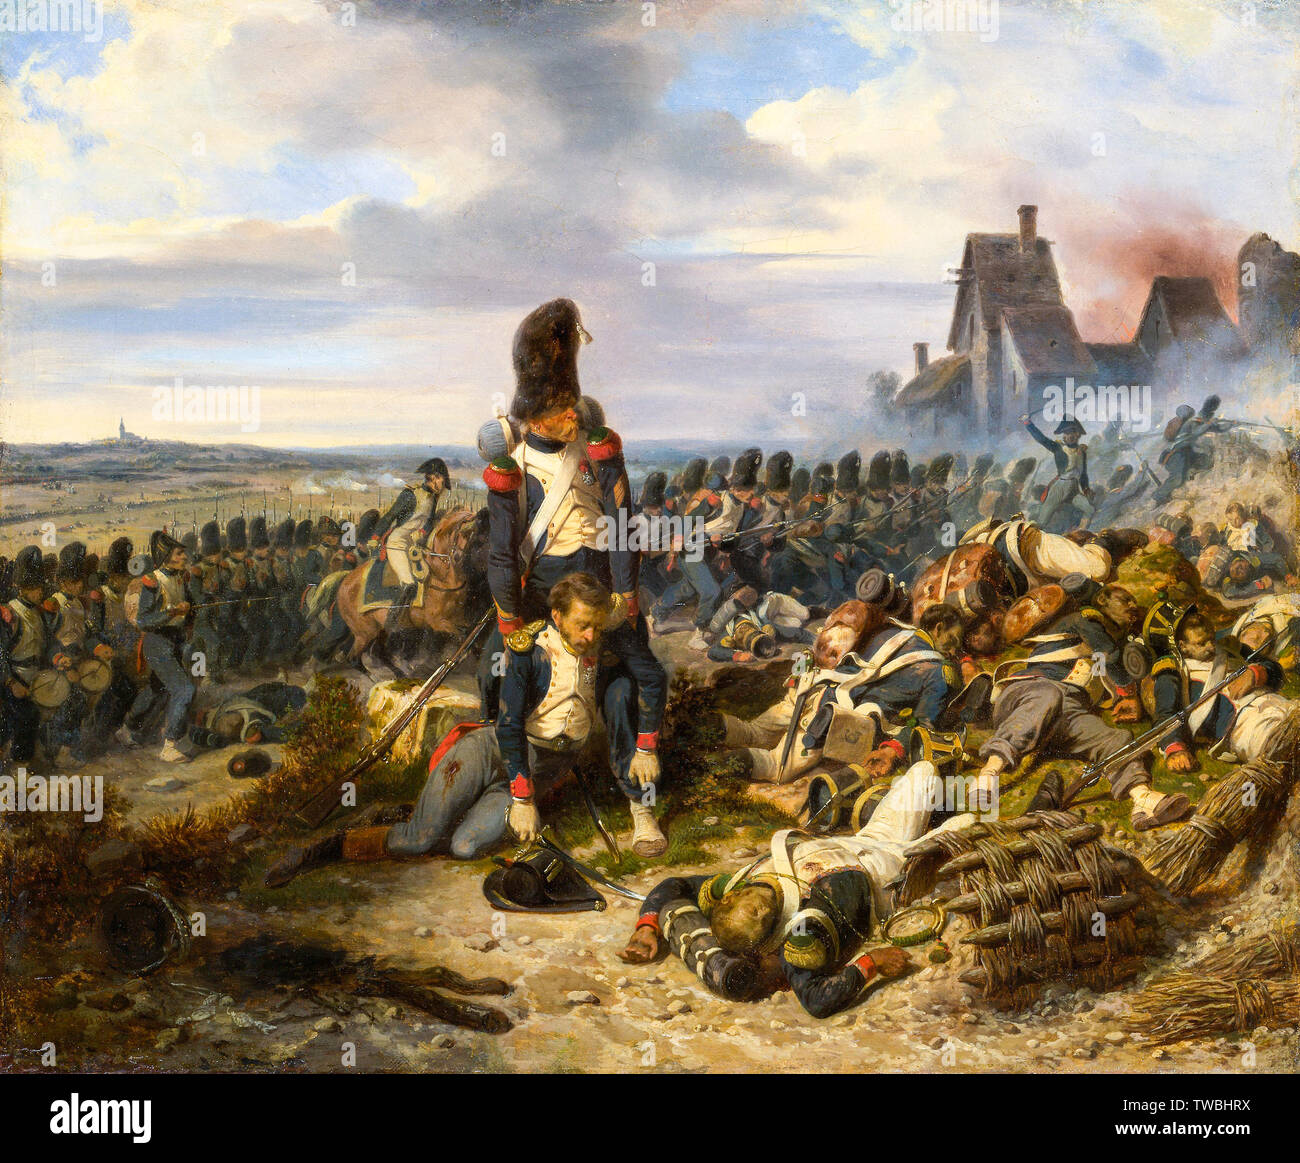 Scène de bataille, Bataille de Waterloo par Hippolyte Bellange, peinture, vers 1825 Banque D'Images